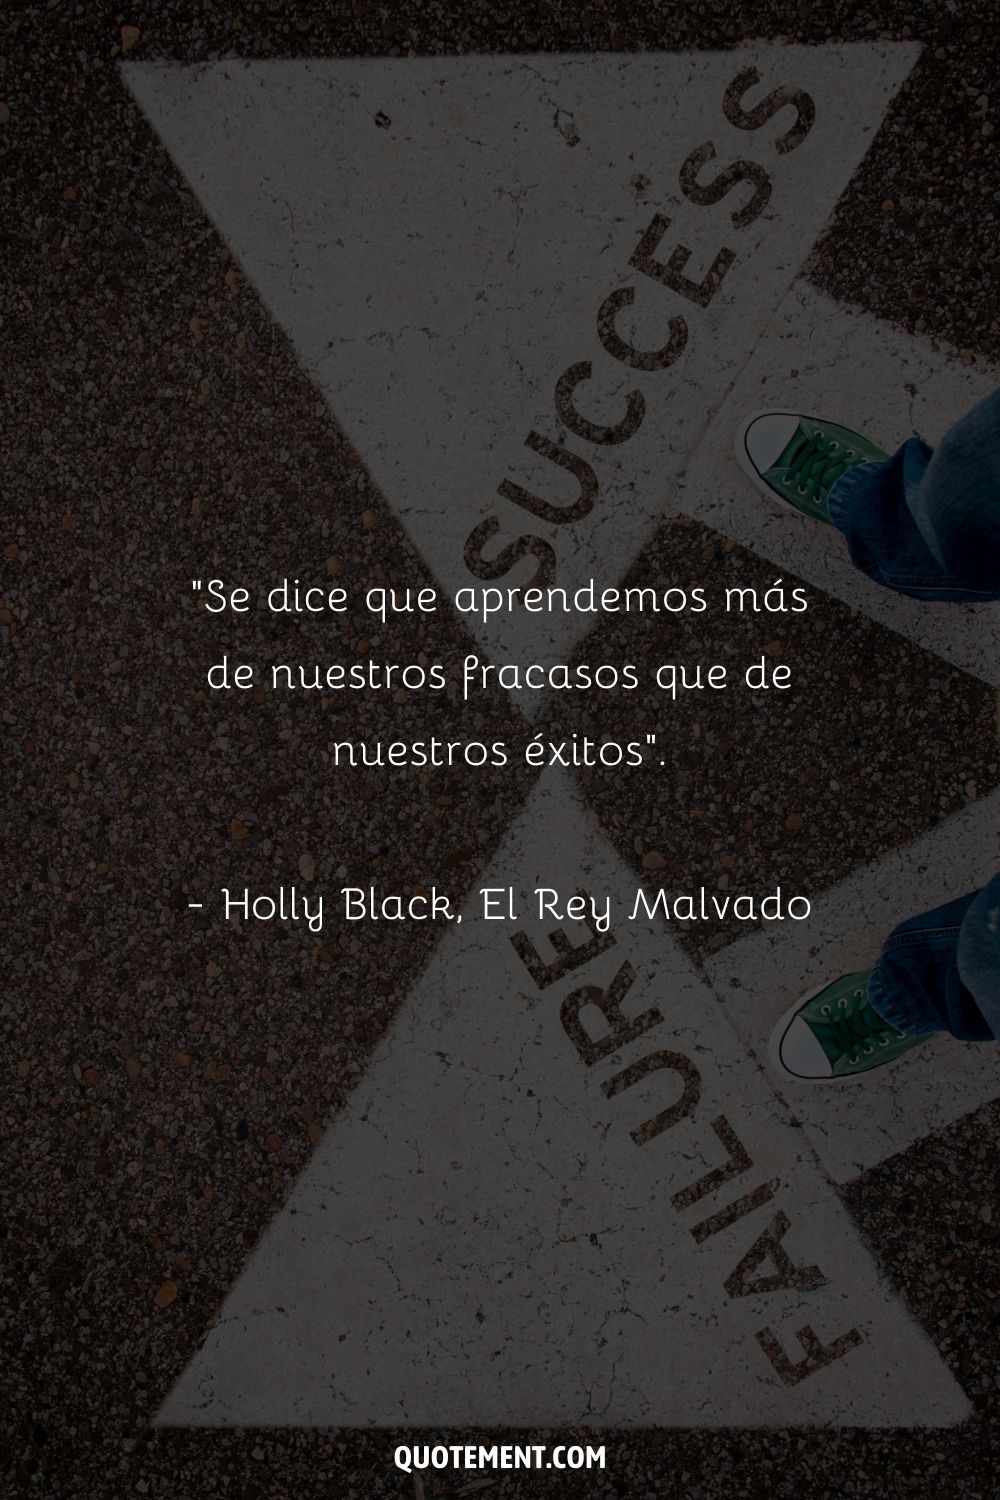 "Se dice que aprendemos más de nuestros fracasos que de nuestros éxitos". - Holly Black, El Rey Malvado